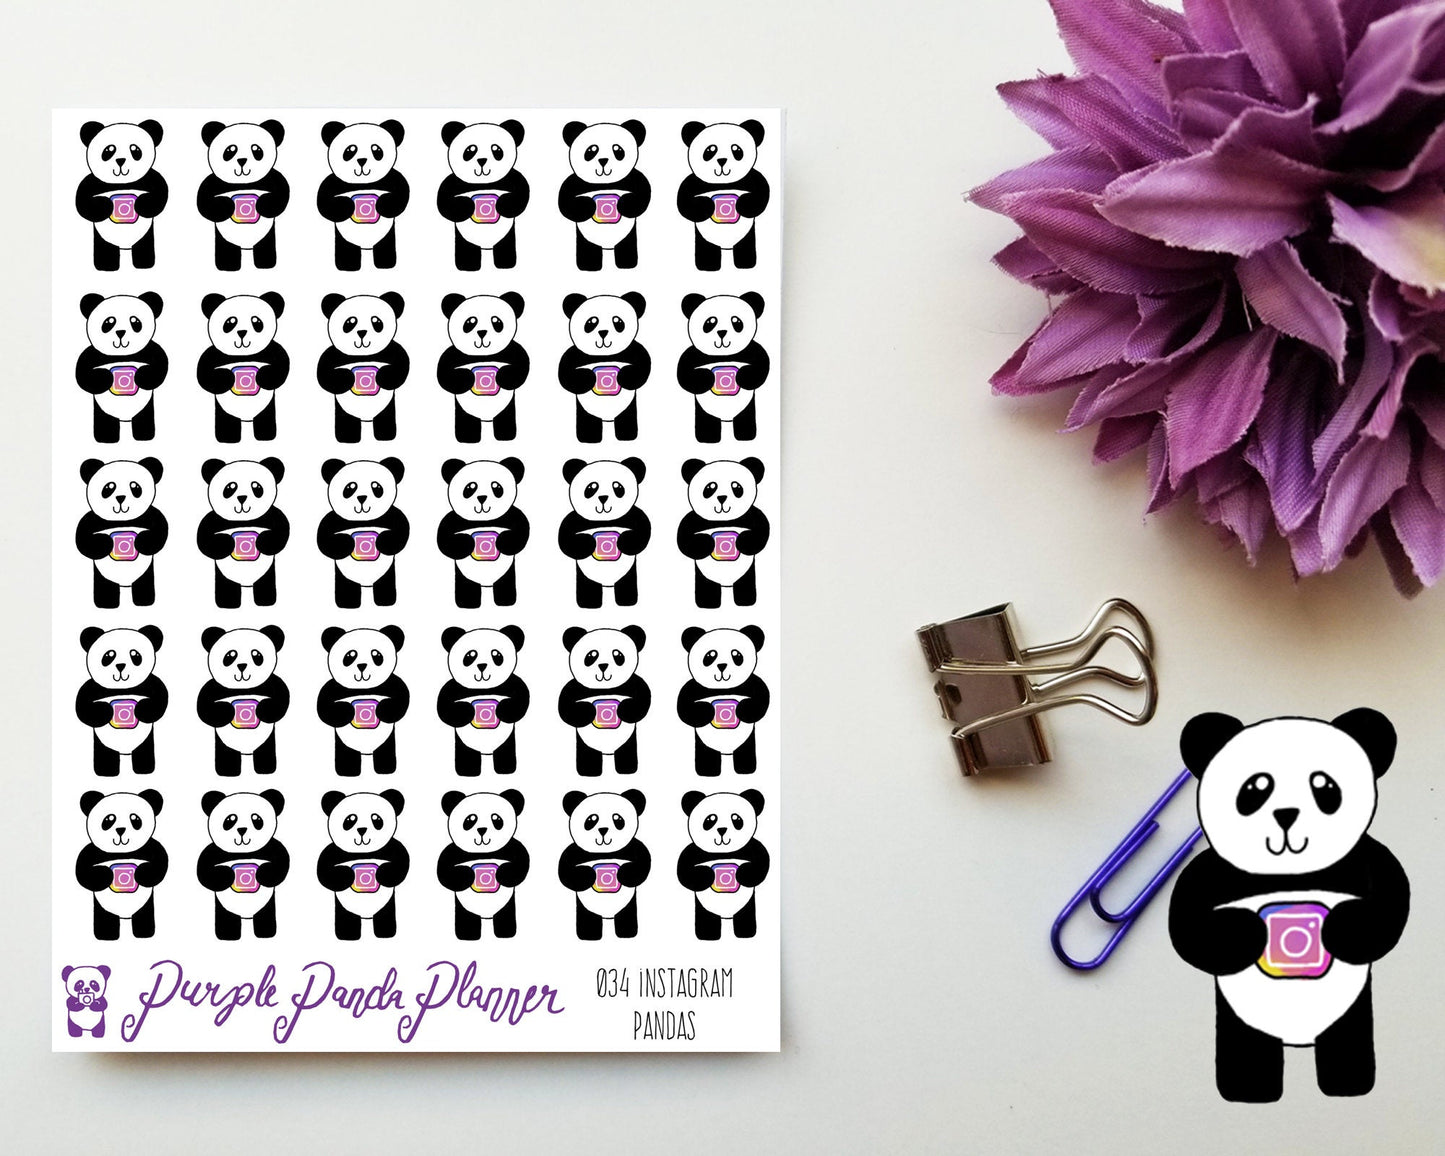 Social Media Pandas - Instagram 034 Planner or Bullet Journal Sticker for Functional Planning